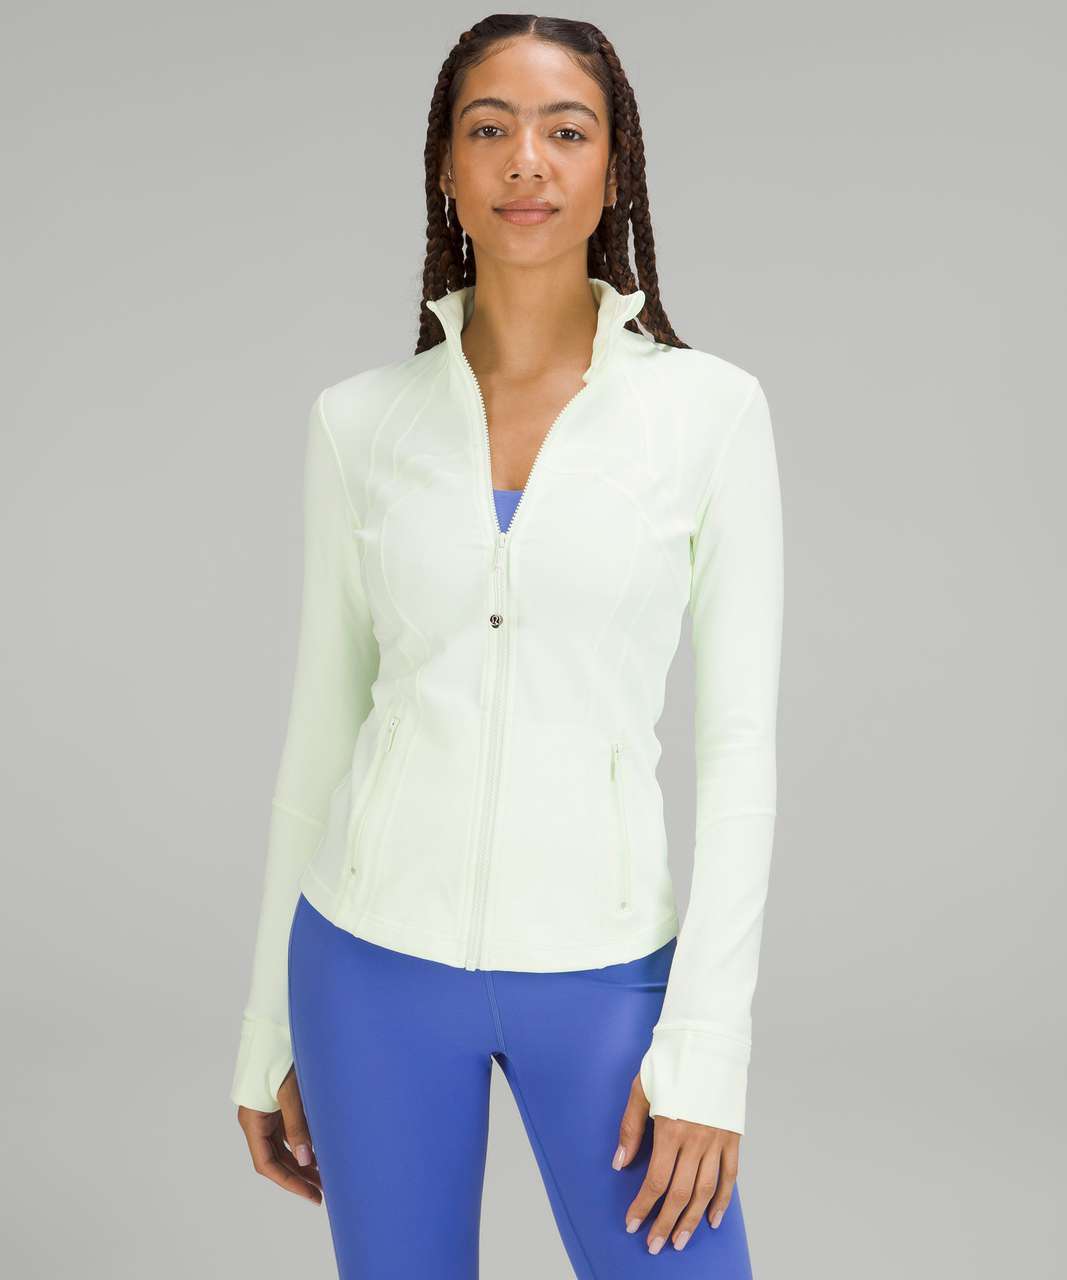 Lulu Define Women Jacket With Logo Yoga Wear Long Sleeve Full